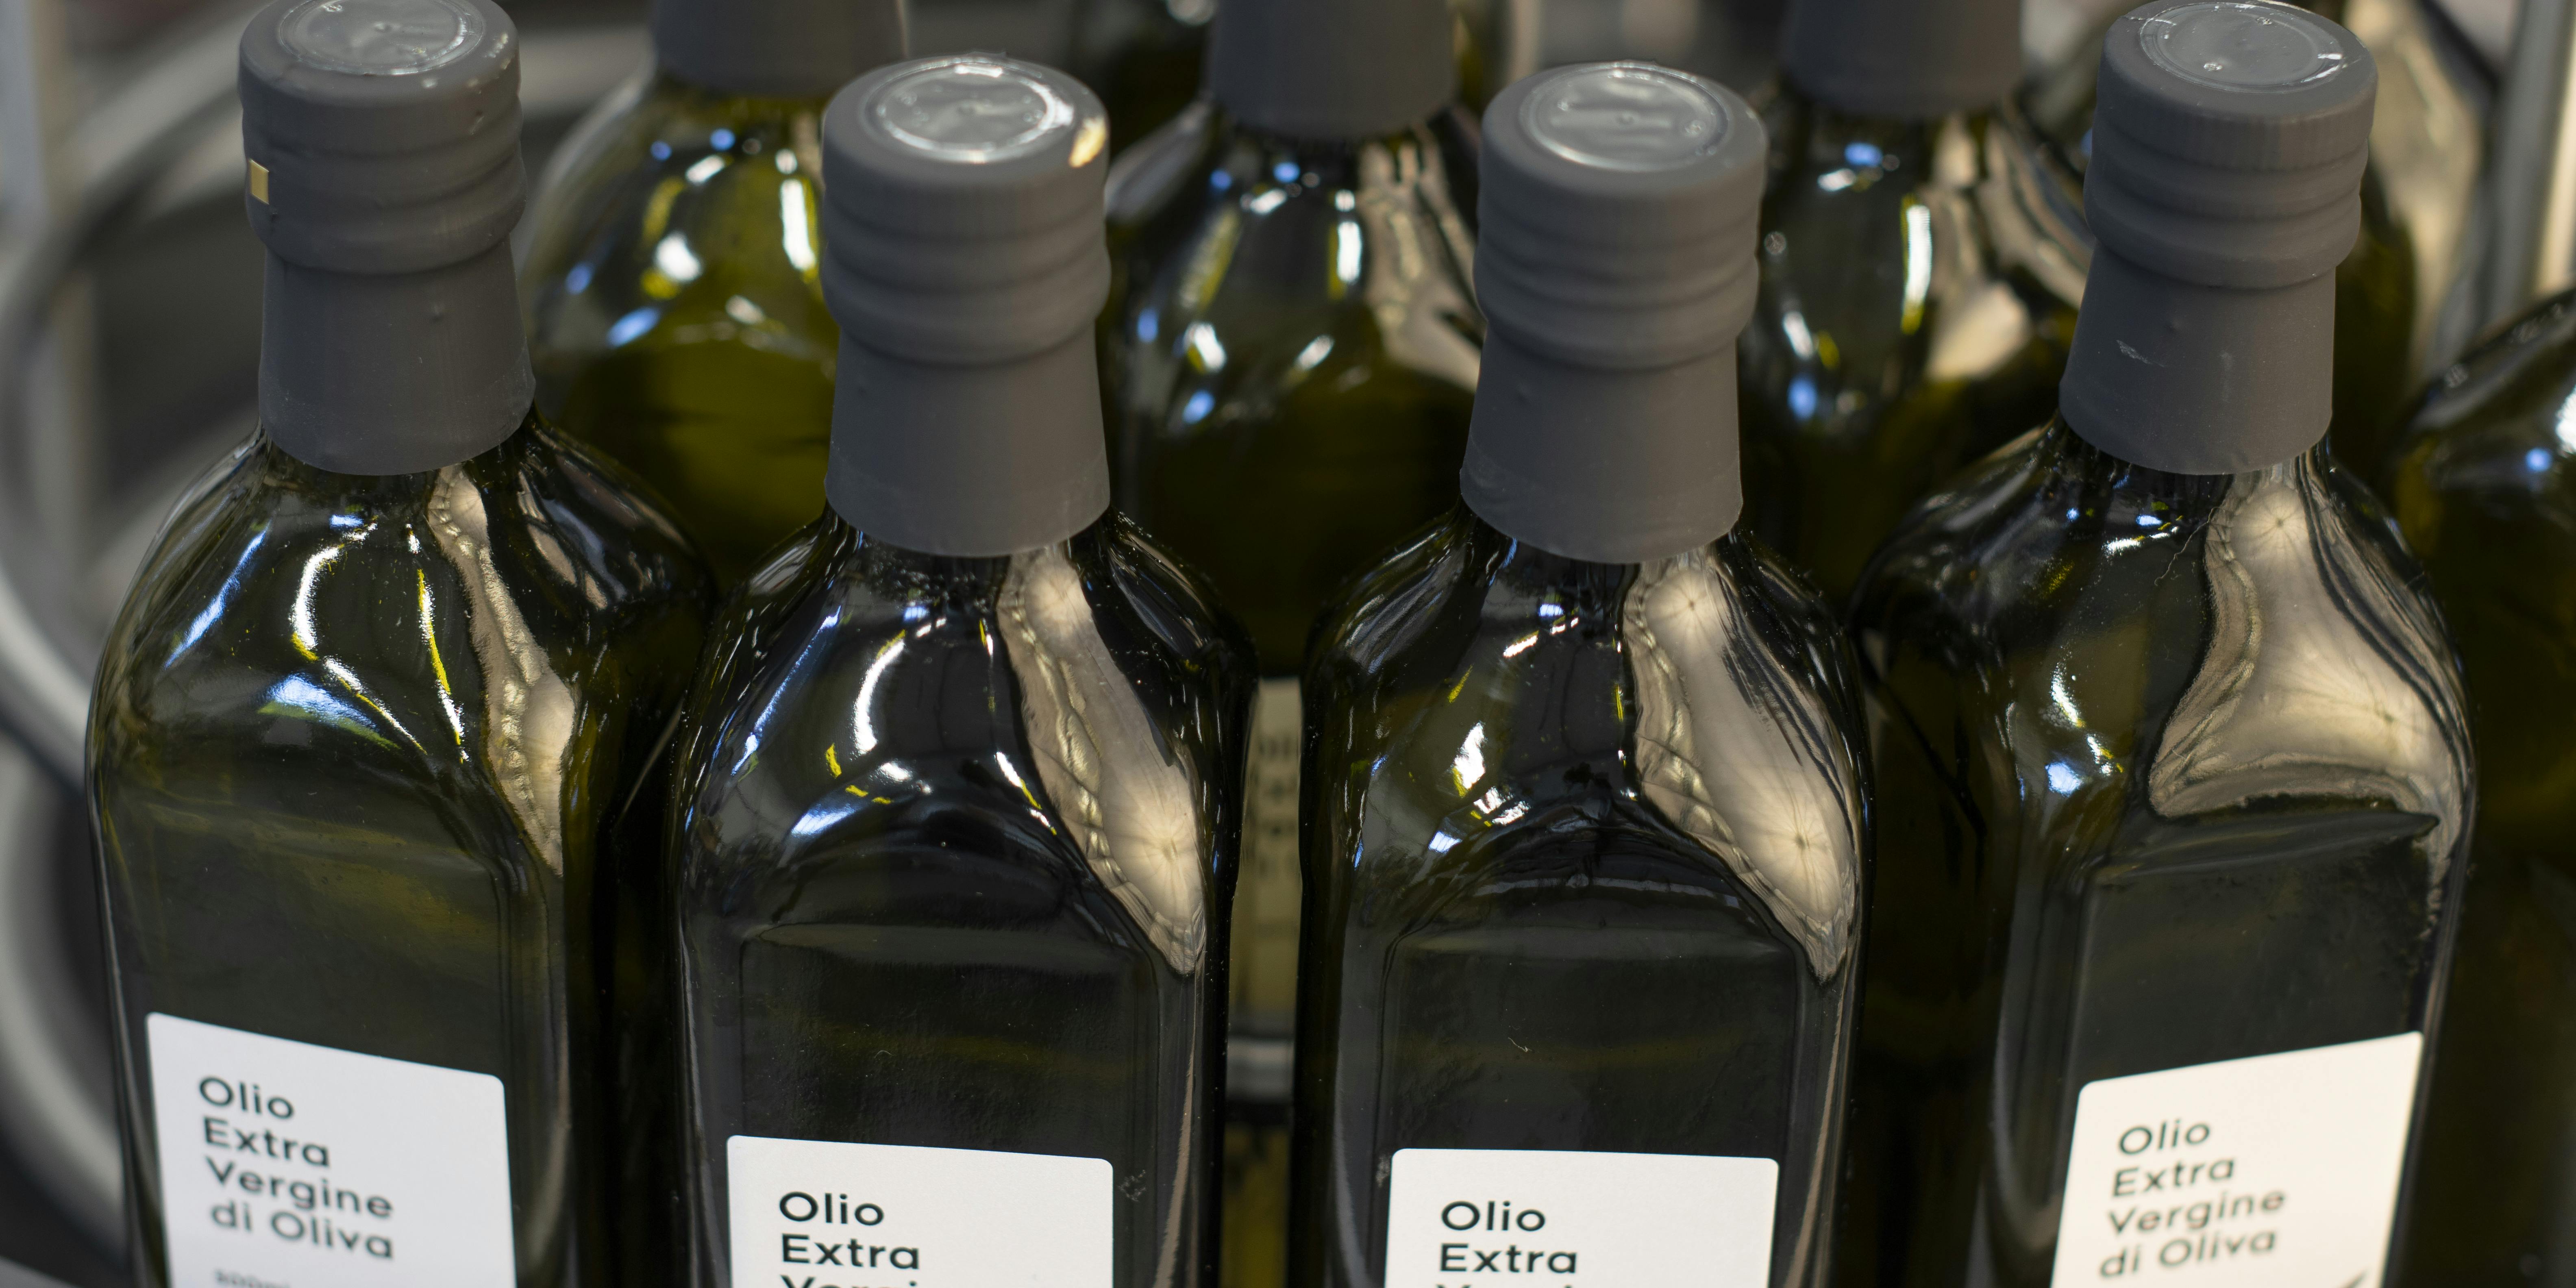 Una tavola indicata per l'accumulo di bottiglie, in questo caso vi sono collocate delle bottiglie di olio con capsula nera ed etichetta personalizzata Quinti